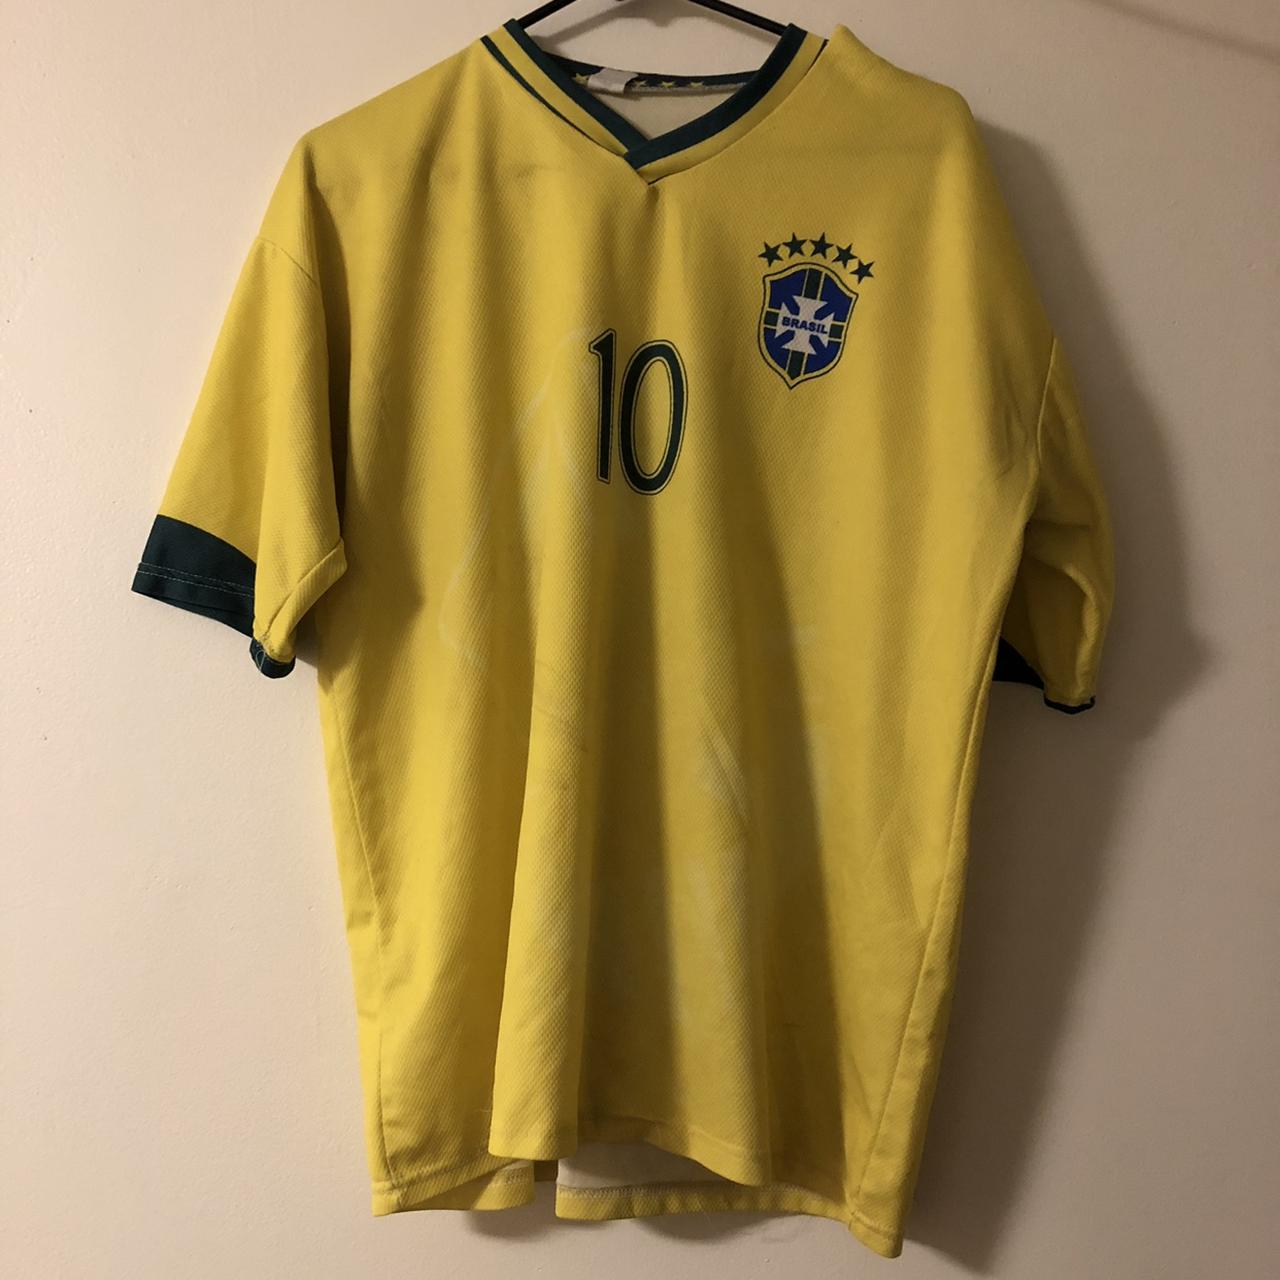 ronaldinho brazil soccer jersey